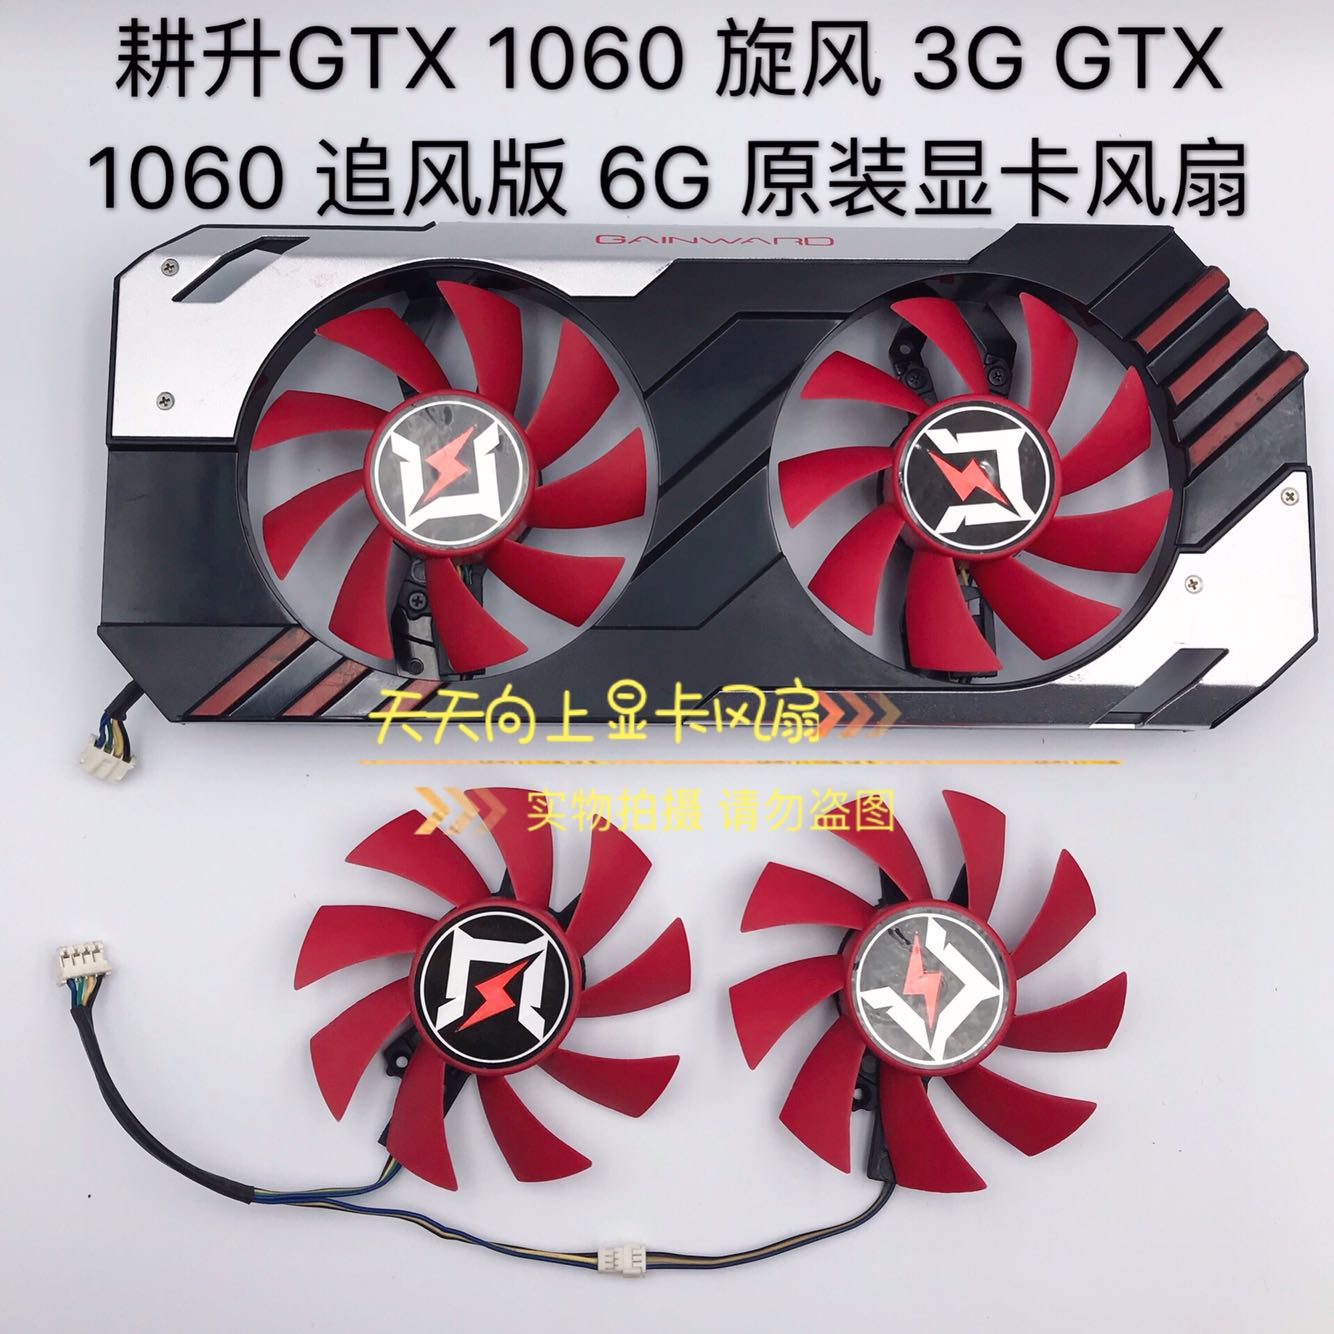 GTX770冰龙显卡安装攻略：轻松拆旧装新，稳定性与性能双提升